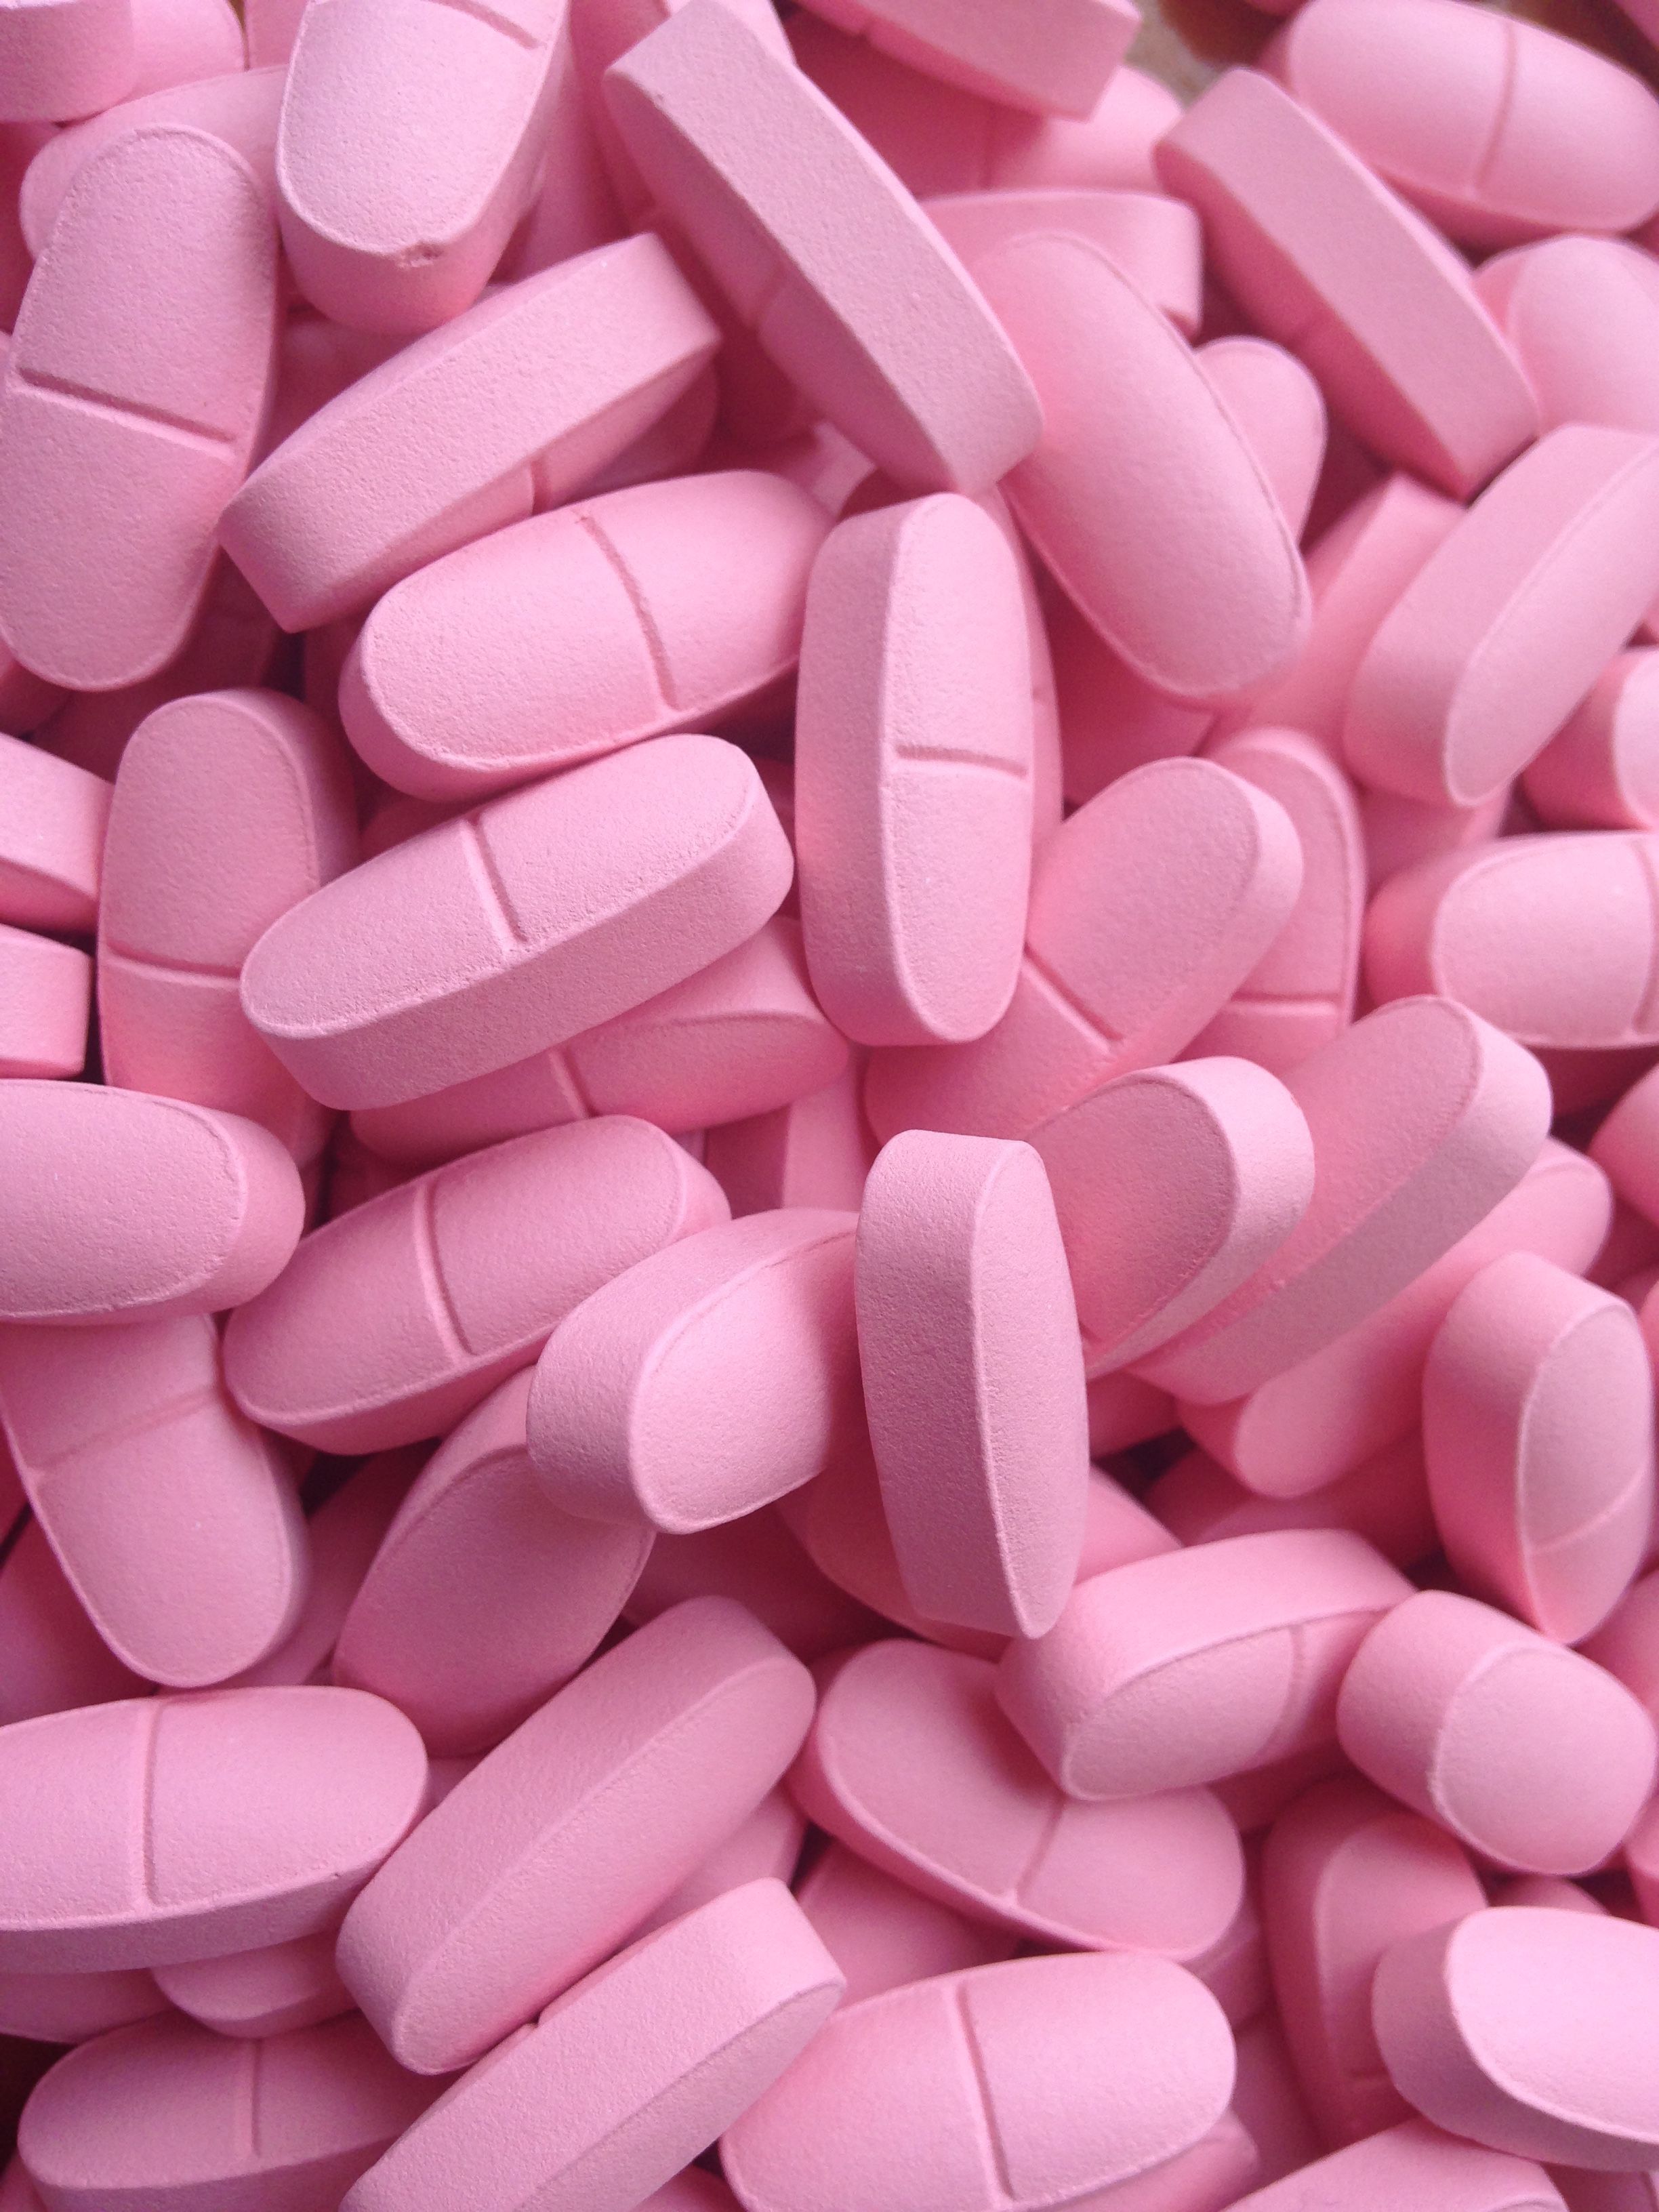 Pink medicine tablets Wallpaper Download